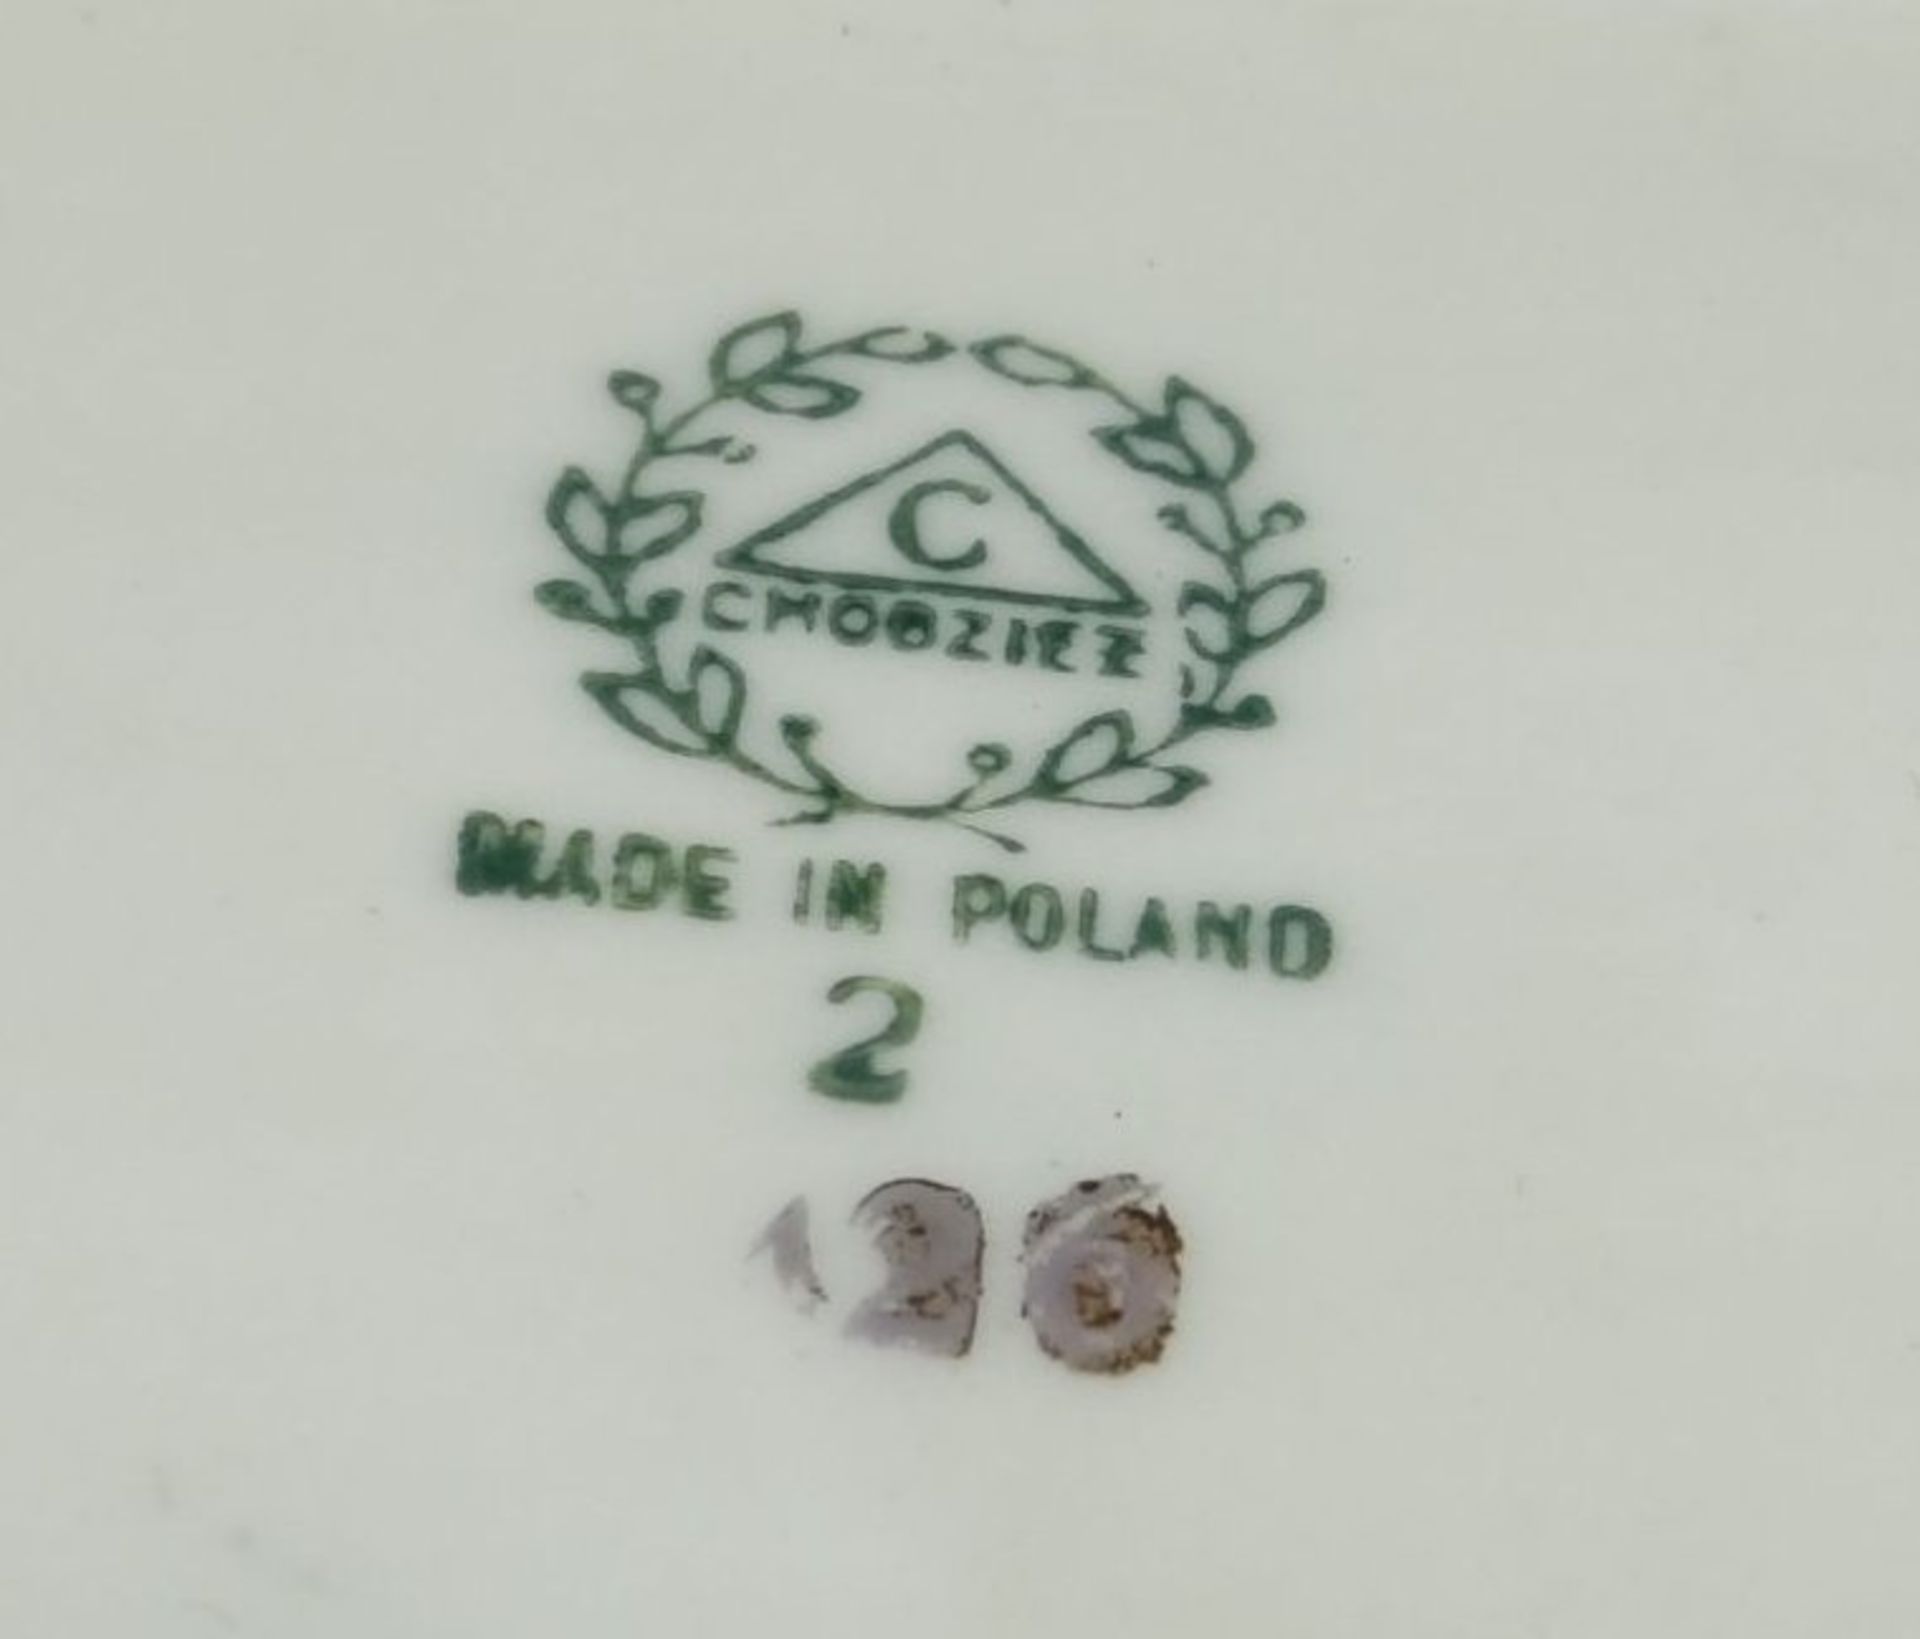 gr. ovale Schale, handbemalt mit Halbakt und sign. Knöt 91, auf polnischen Porzellan, 35x24 c- - - - Bild 5 aus 5